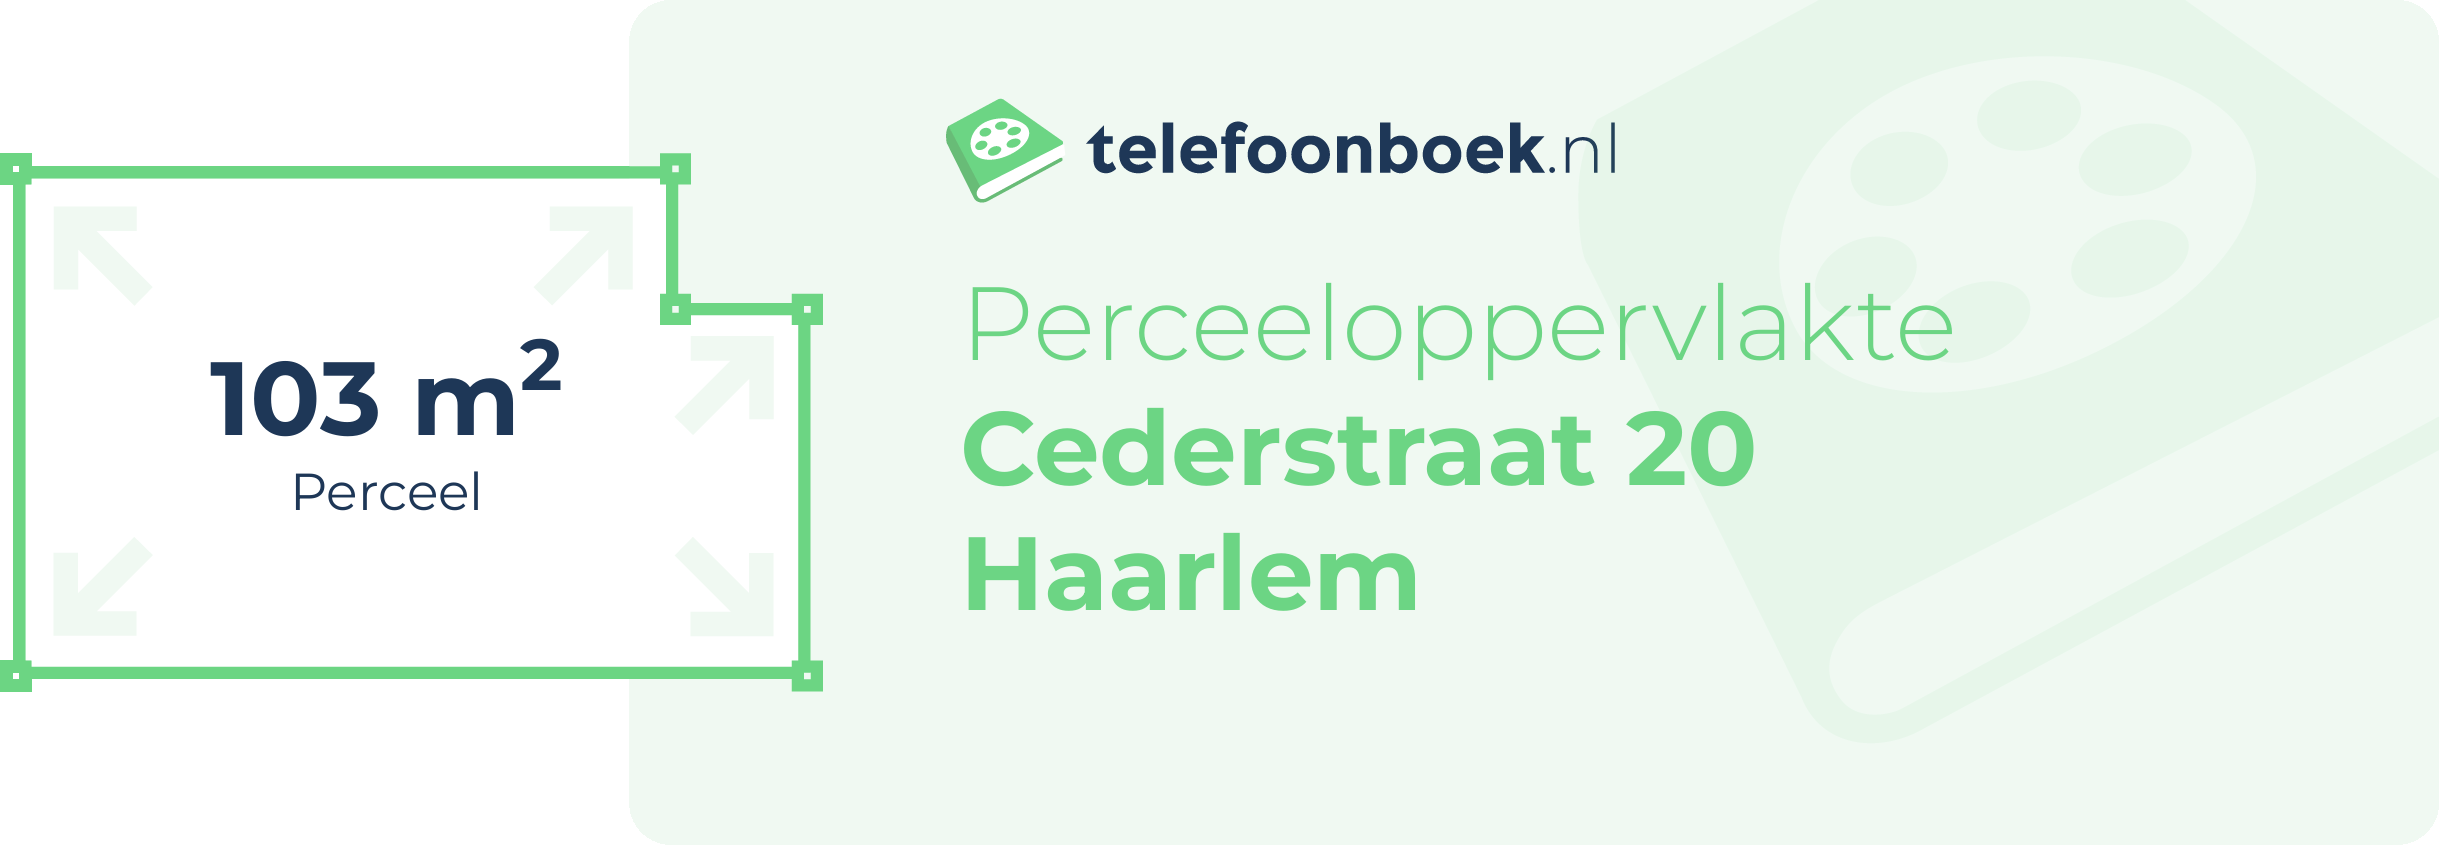 Perceeloppervlakte Cederstraat 20 Haarlem